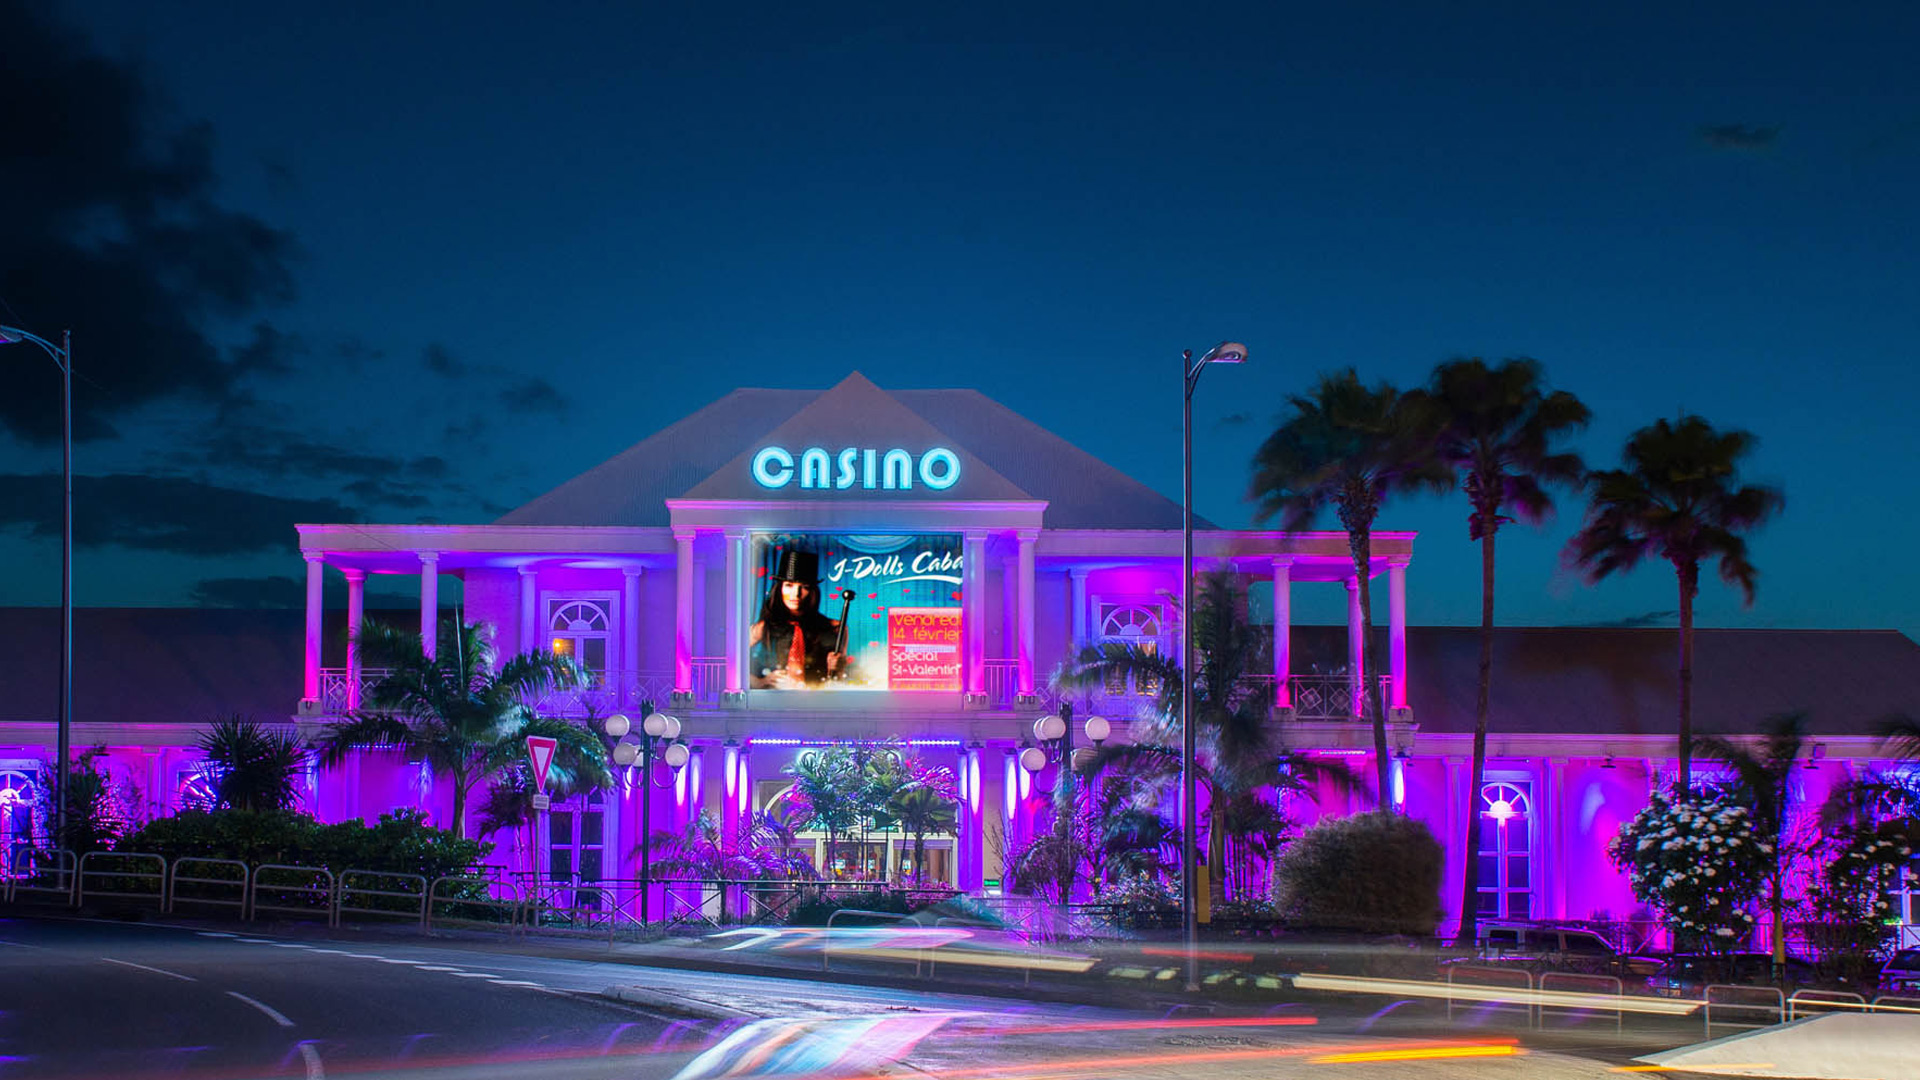     Les casinos de Martinique retrouvent leur public

